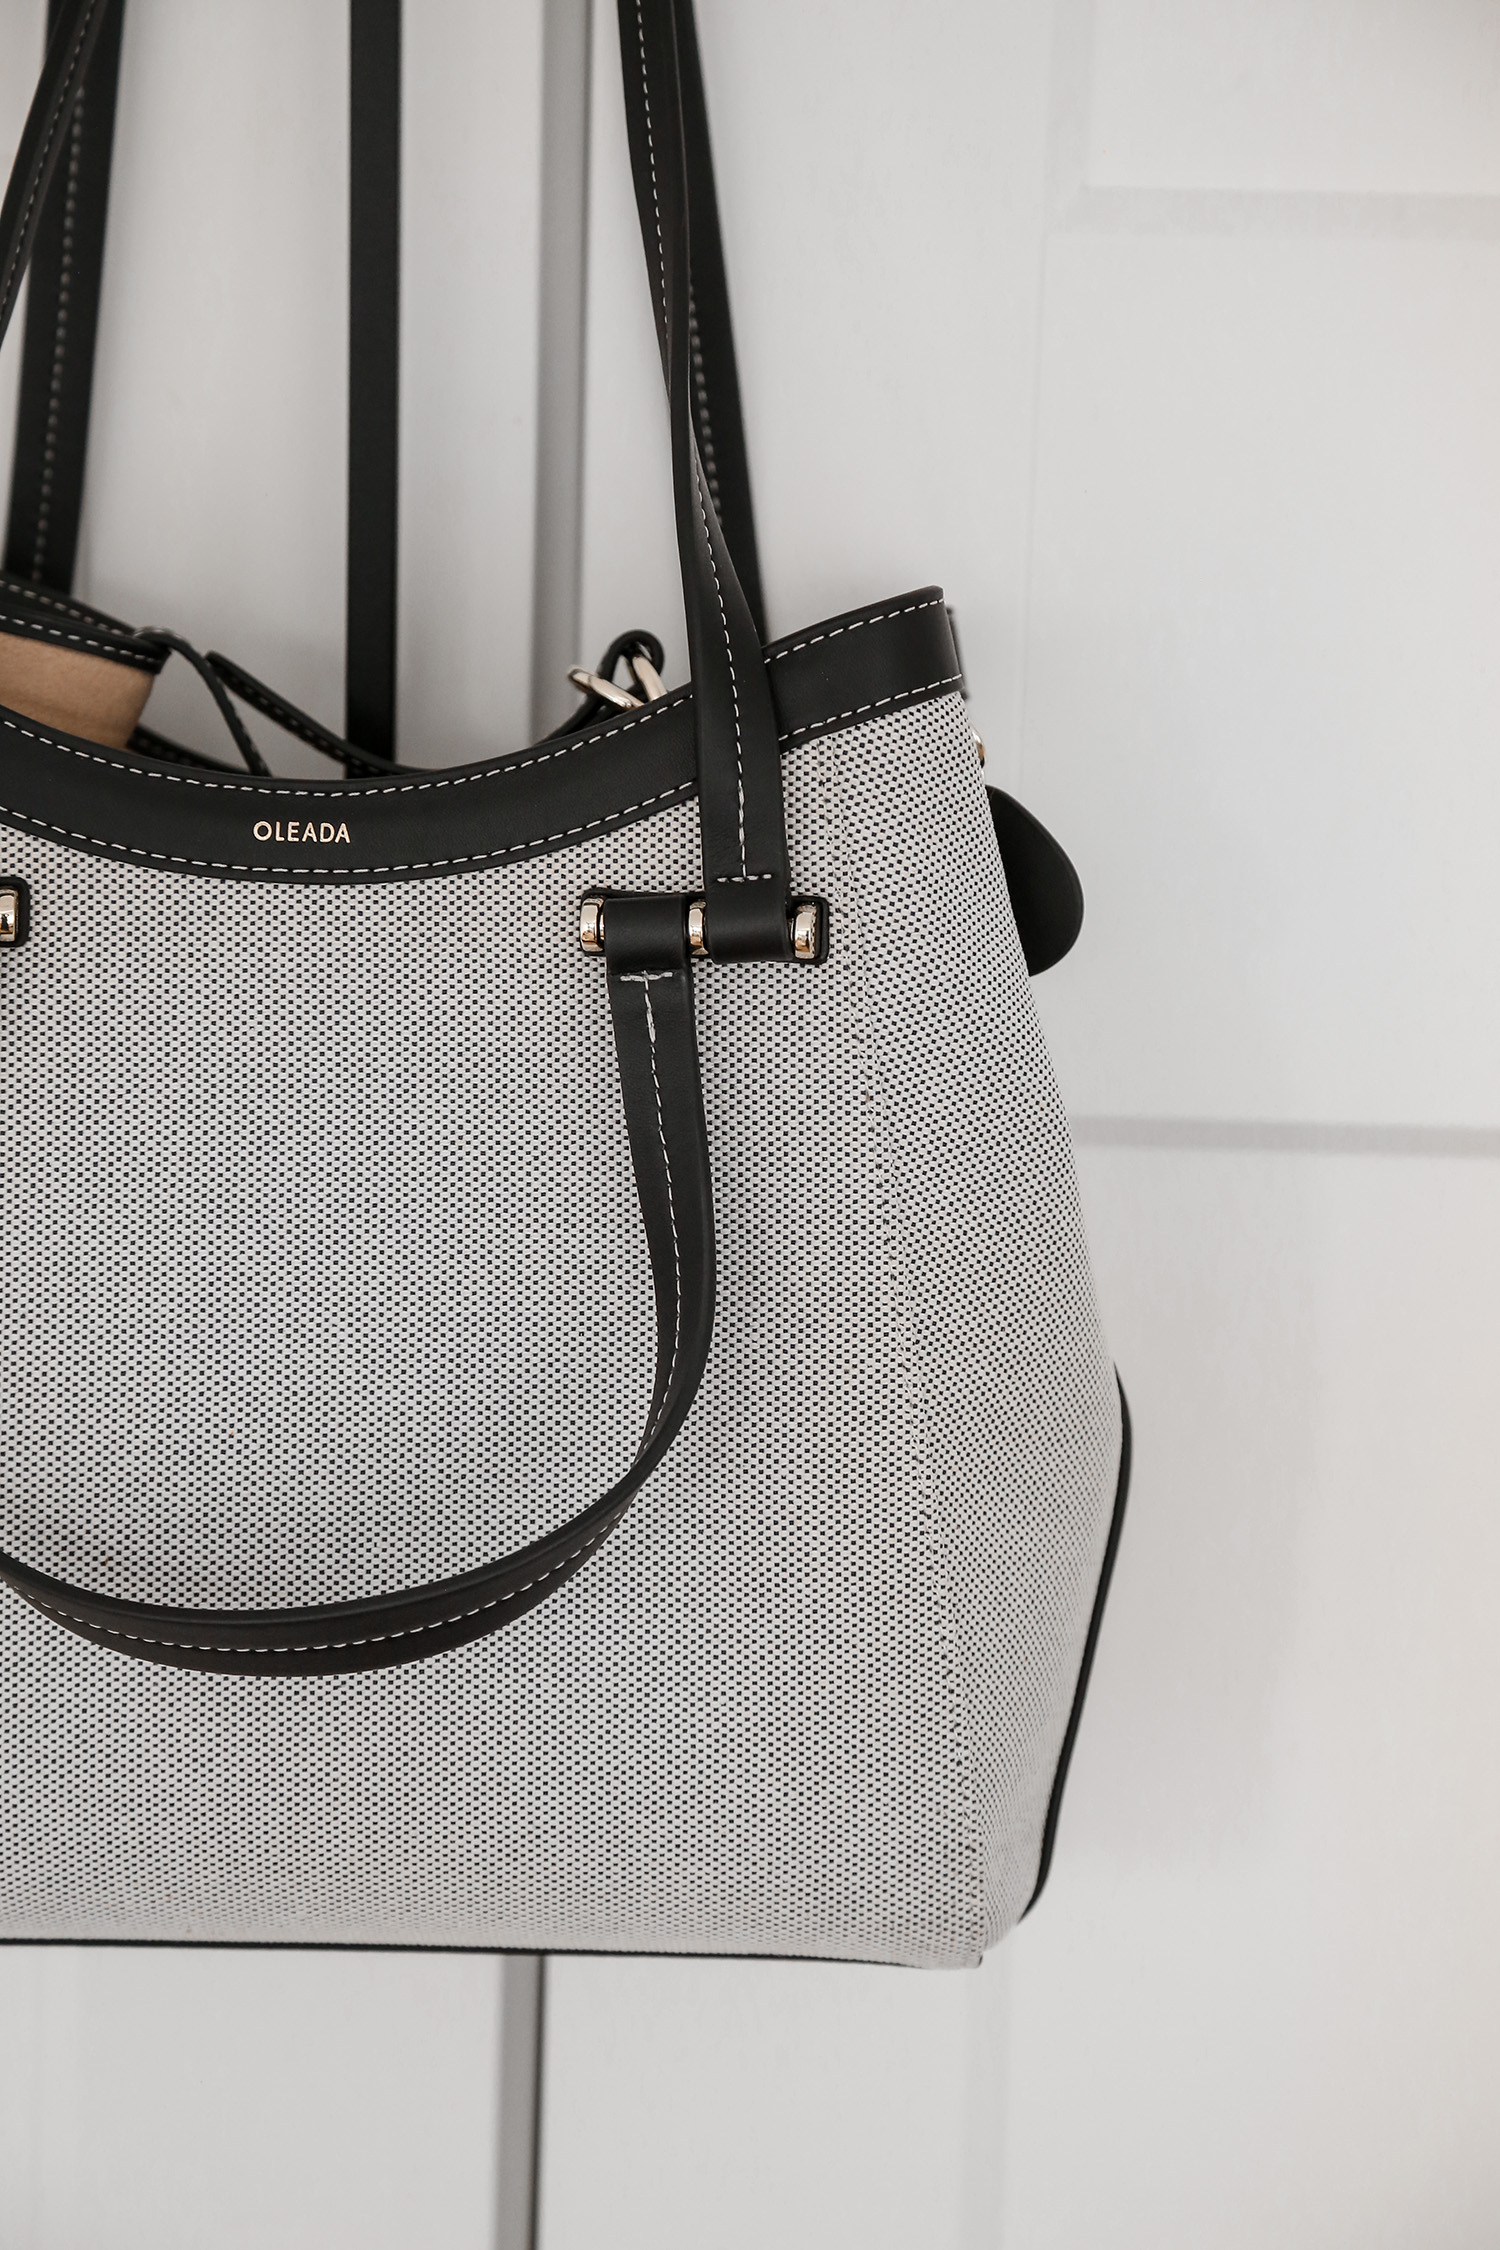 Minimalist Luxury Tote Bag Details